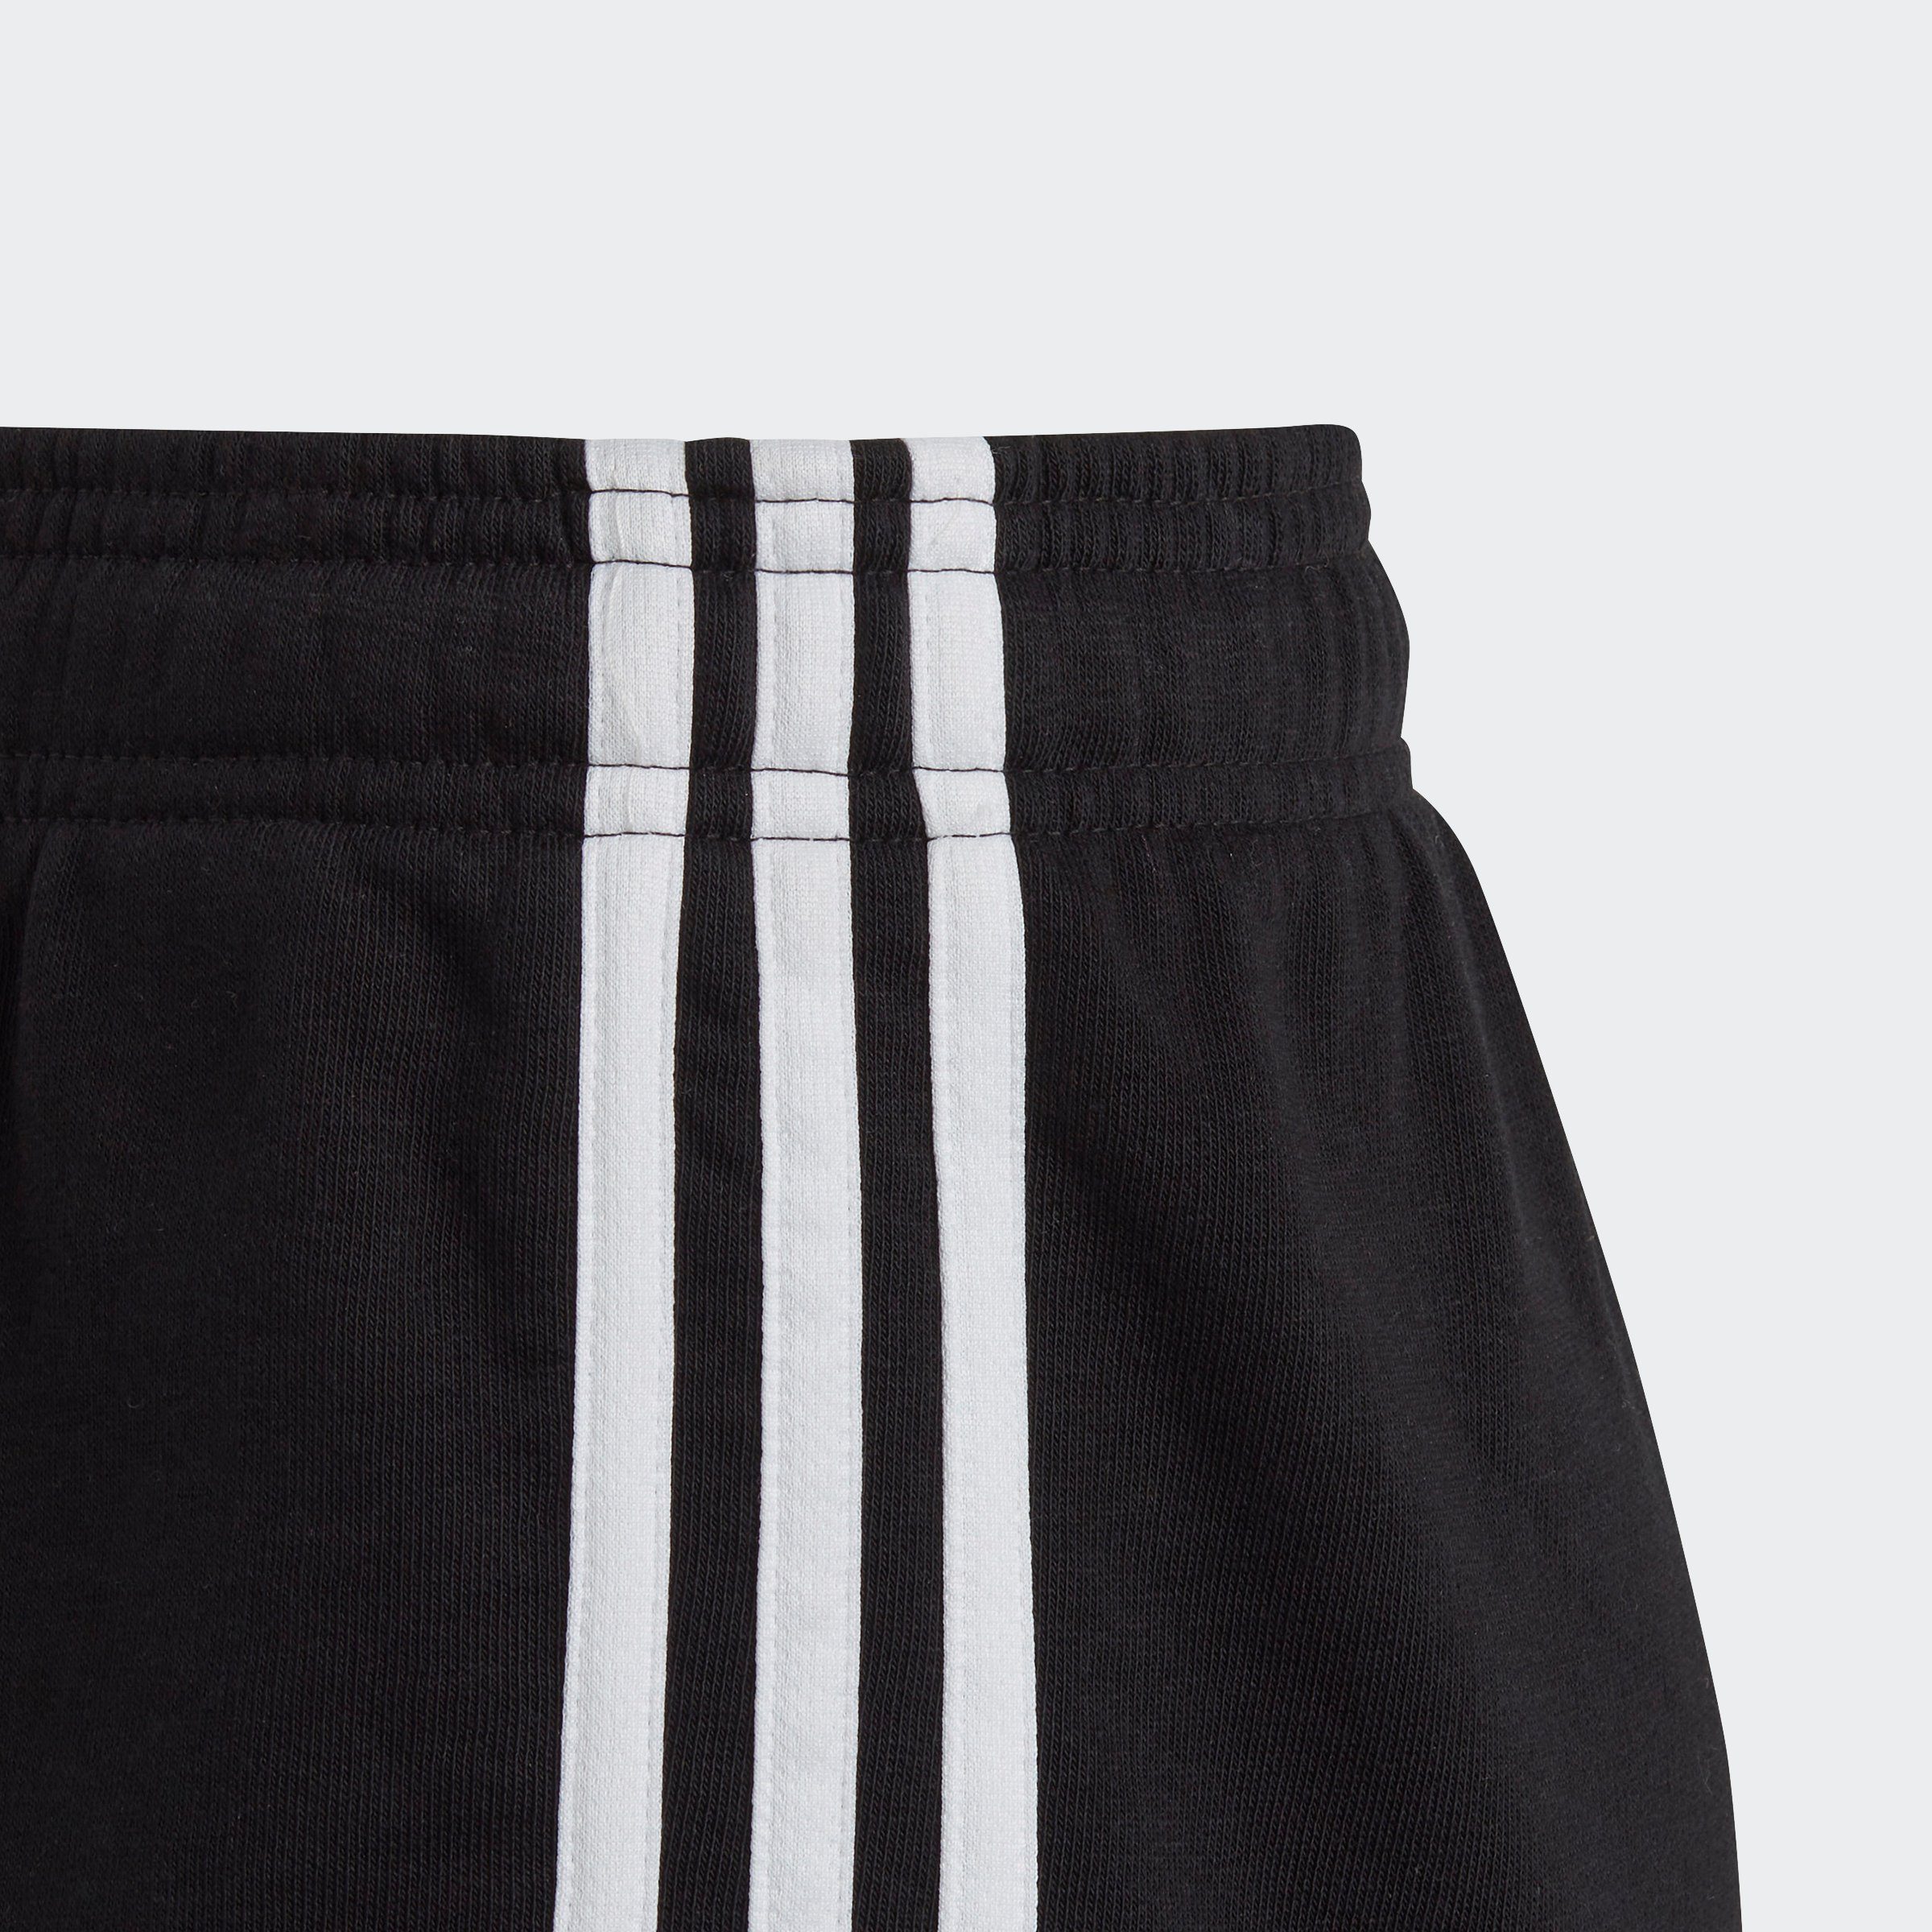 Sportswear 3-STREIFEN Black White Shorts (1-tlg) / ESSENTIALS adidas